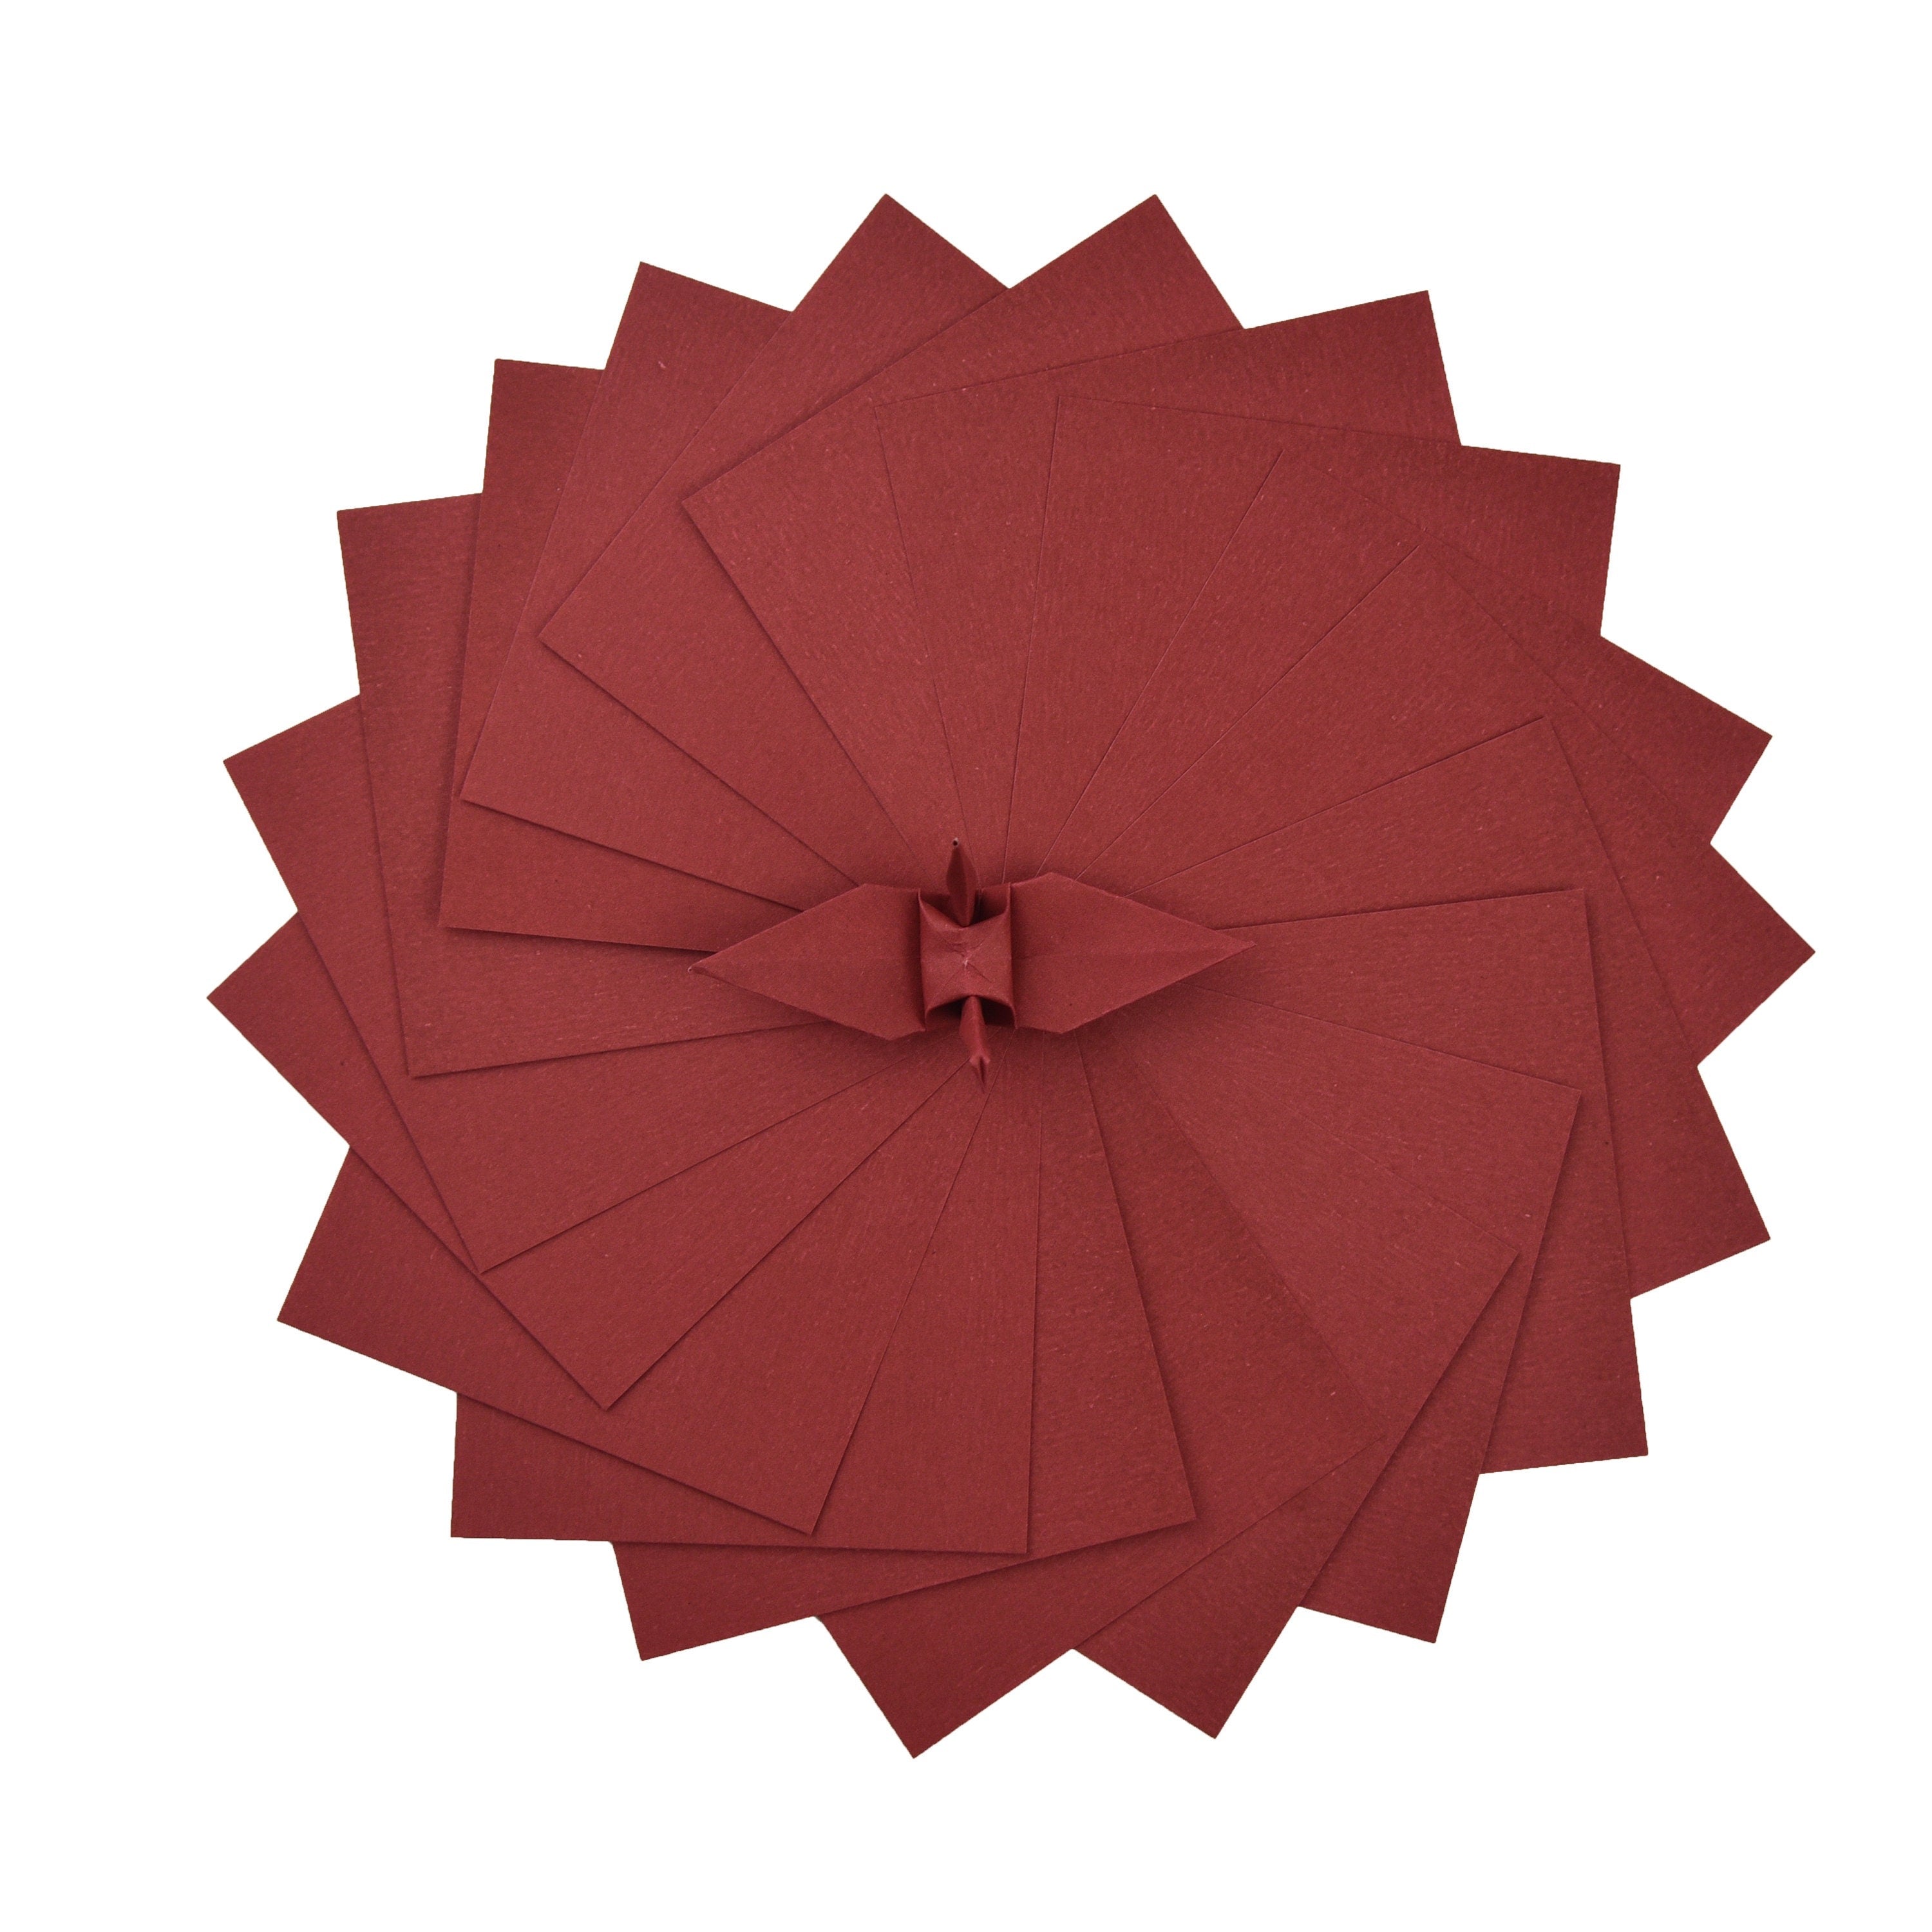 100 Hojas de Papel Origami - 6x6 pulgadas - Paquete de Papel Cuadrado para Plegar, Grullas de Origami y Decoración - S06